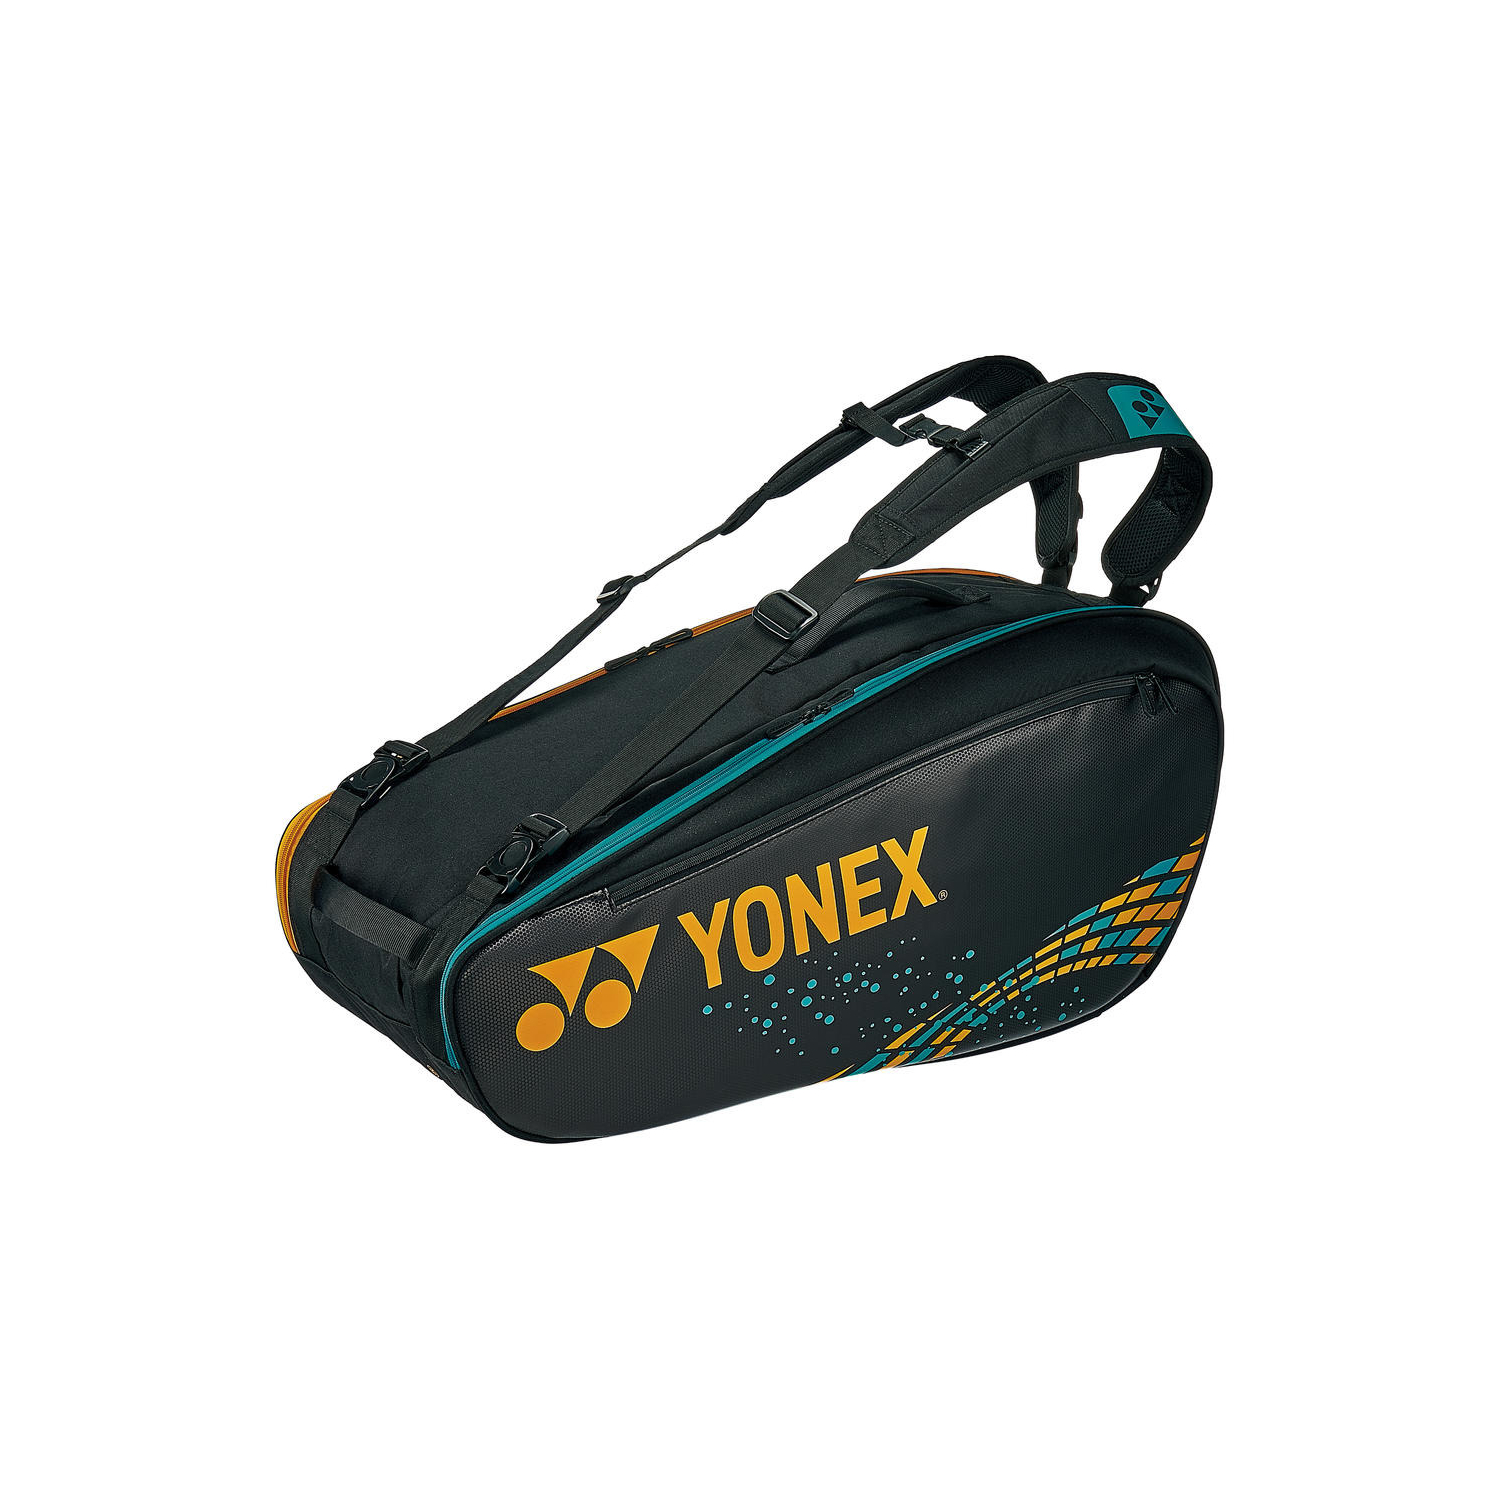 ラケットバッグ 6 Bag02r Bag02r ヨネックス Yonex 公式オンラインショップ